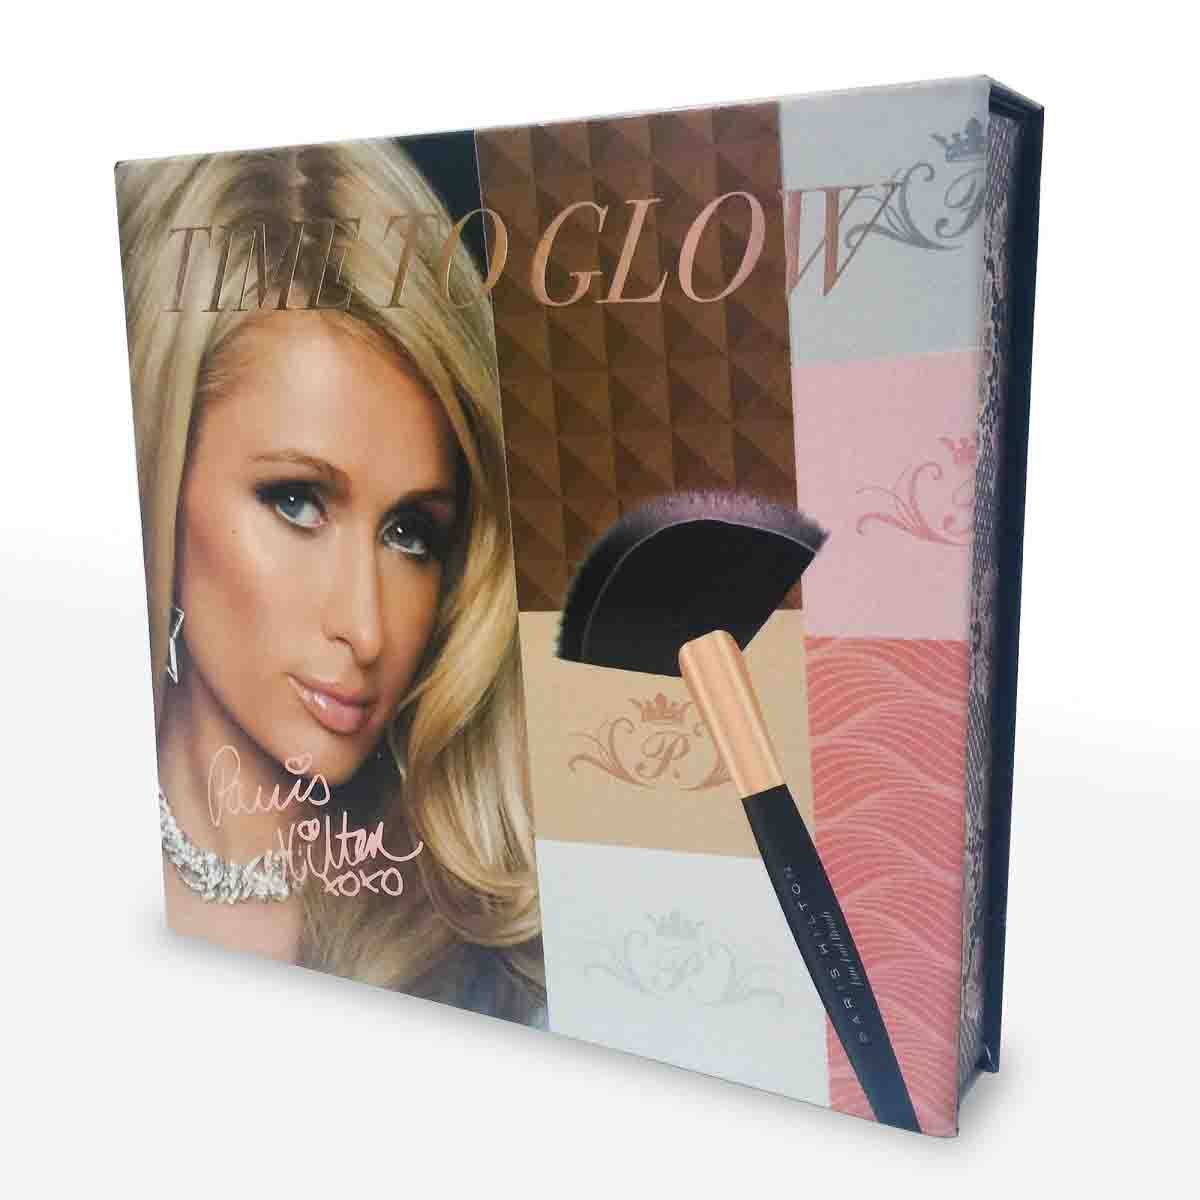 Estuche Paris Hilton Make Up   Time To Glow Box